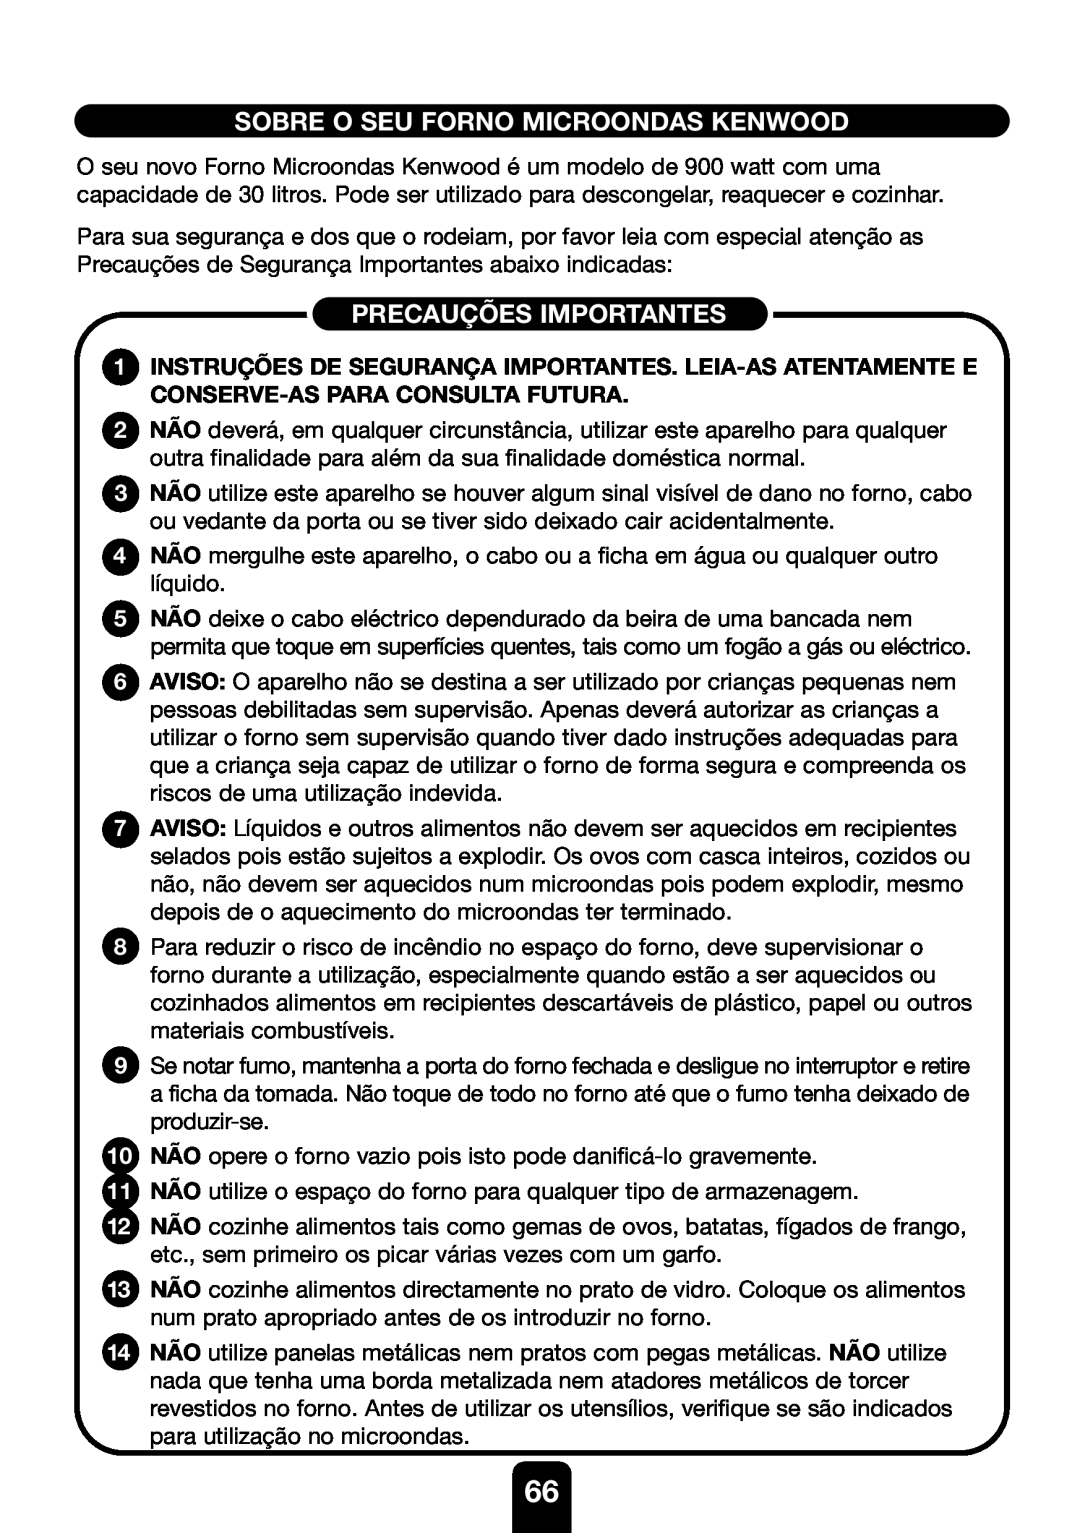 Kenwood MW761E manual Sobre O Seu Forno Microondas Kenwood, Precauções Importantes 